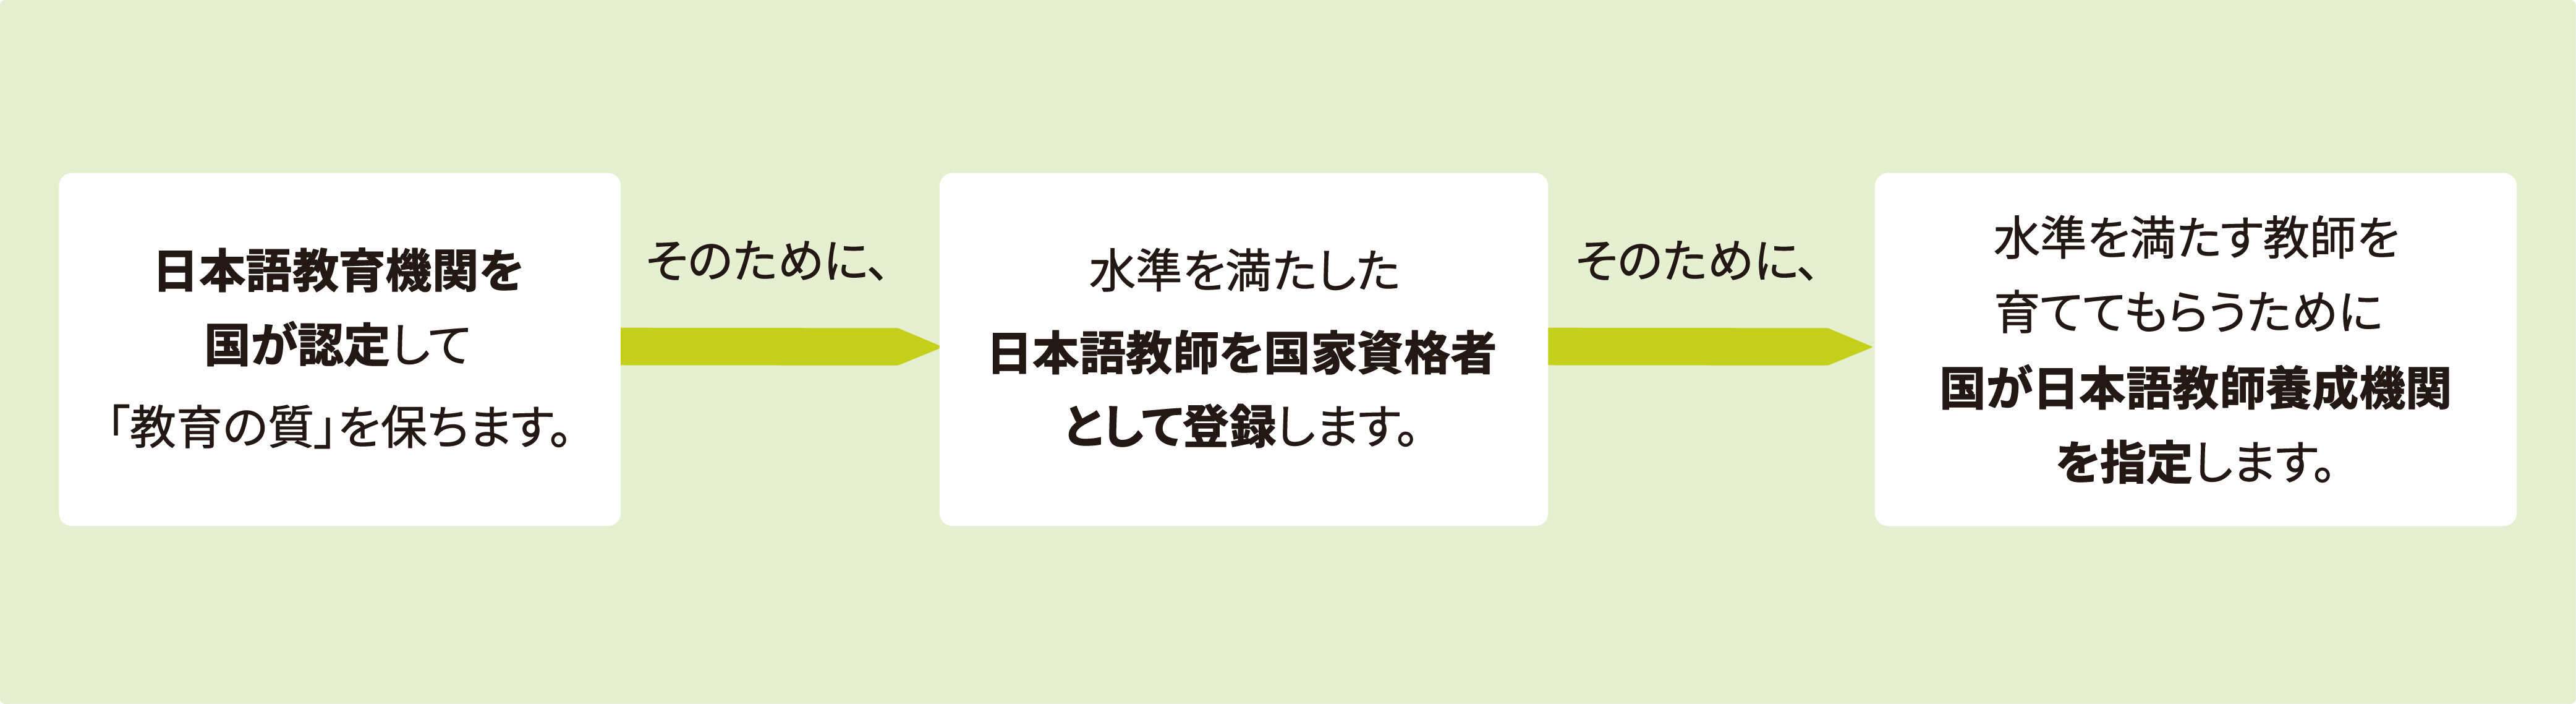 「認定日本語教育機関」イメージ図